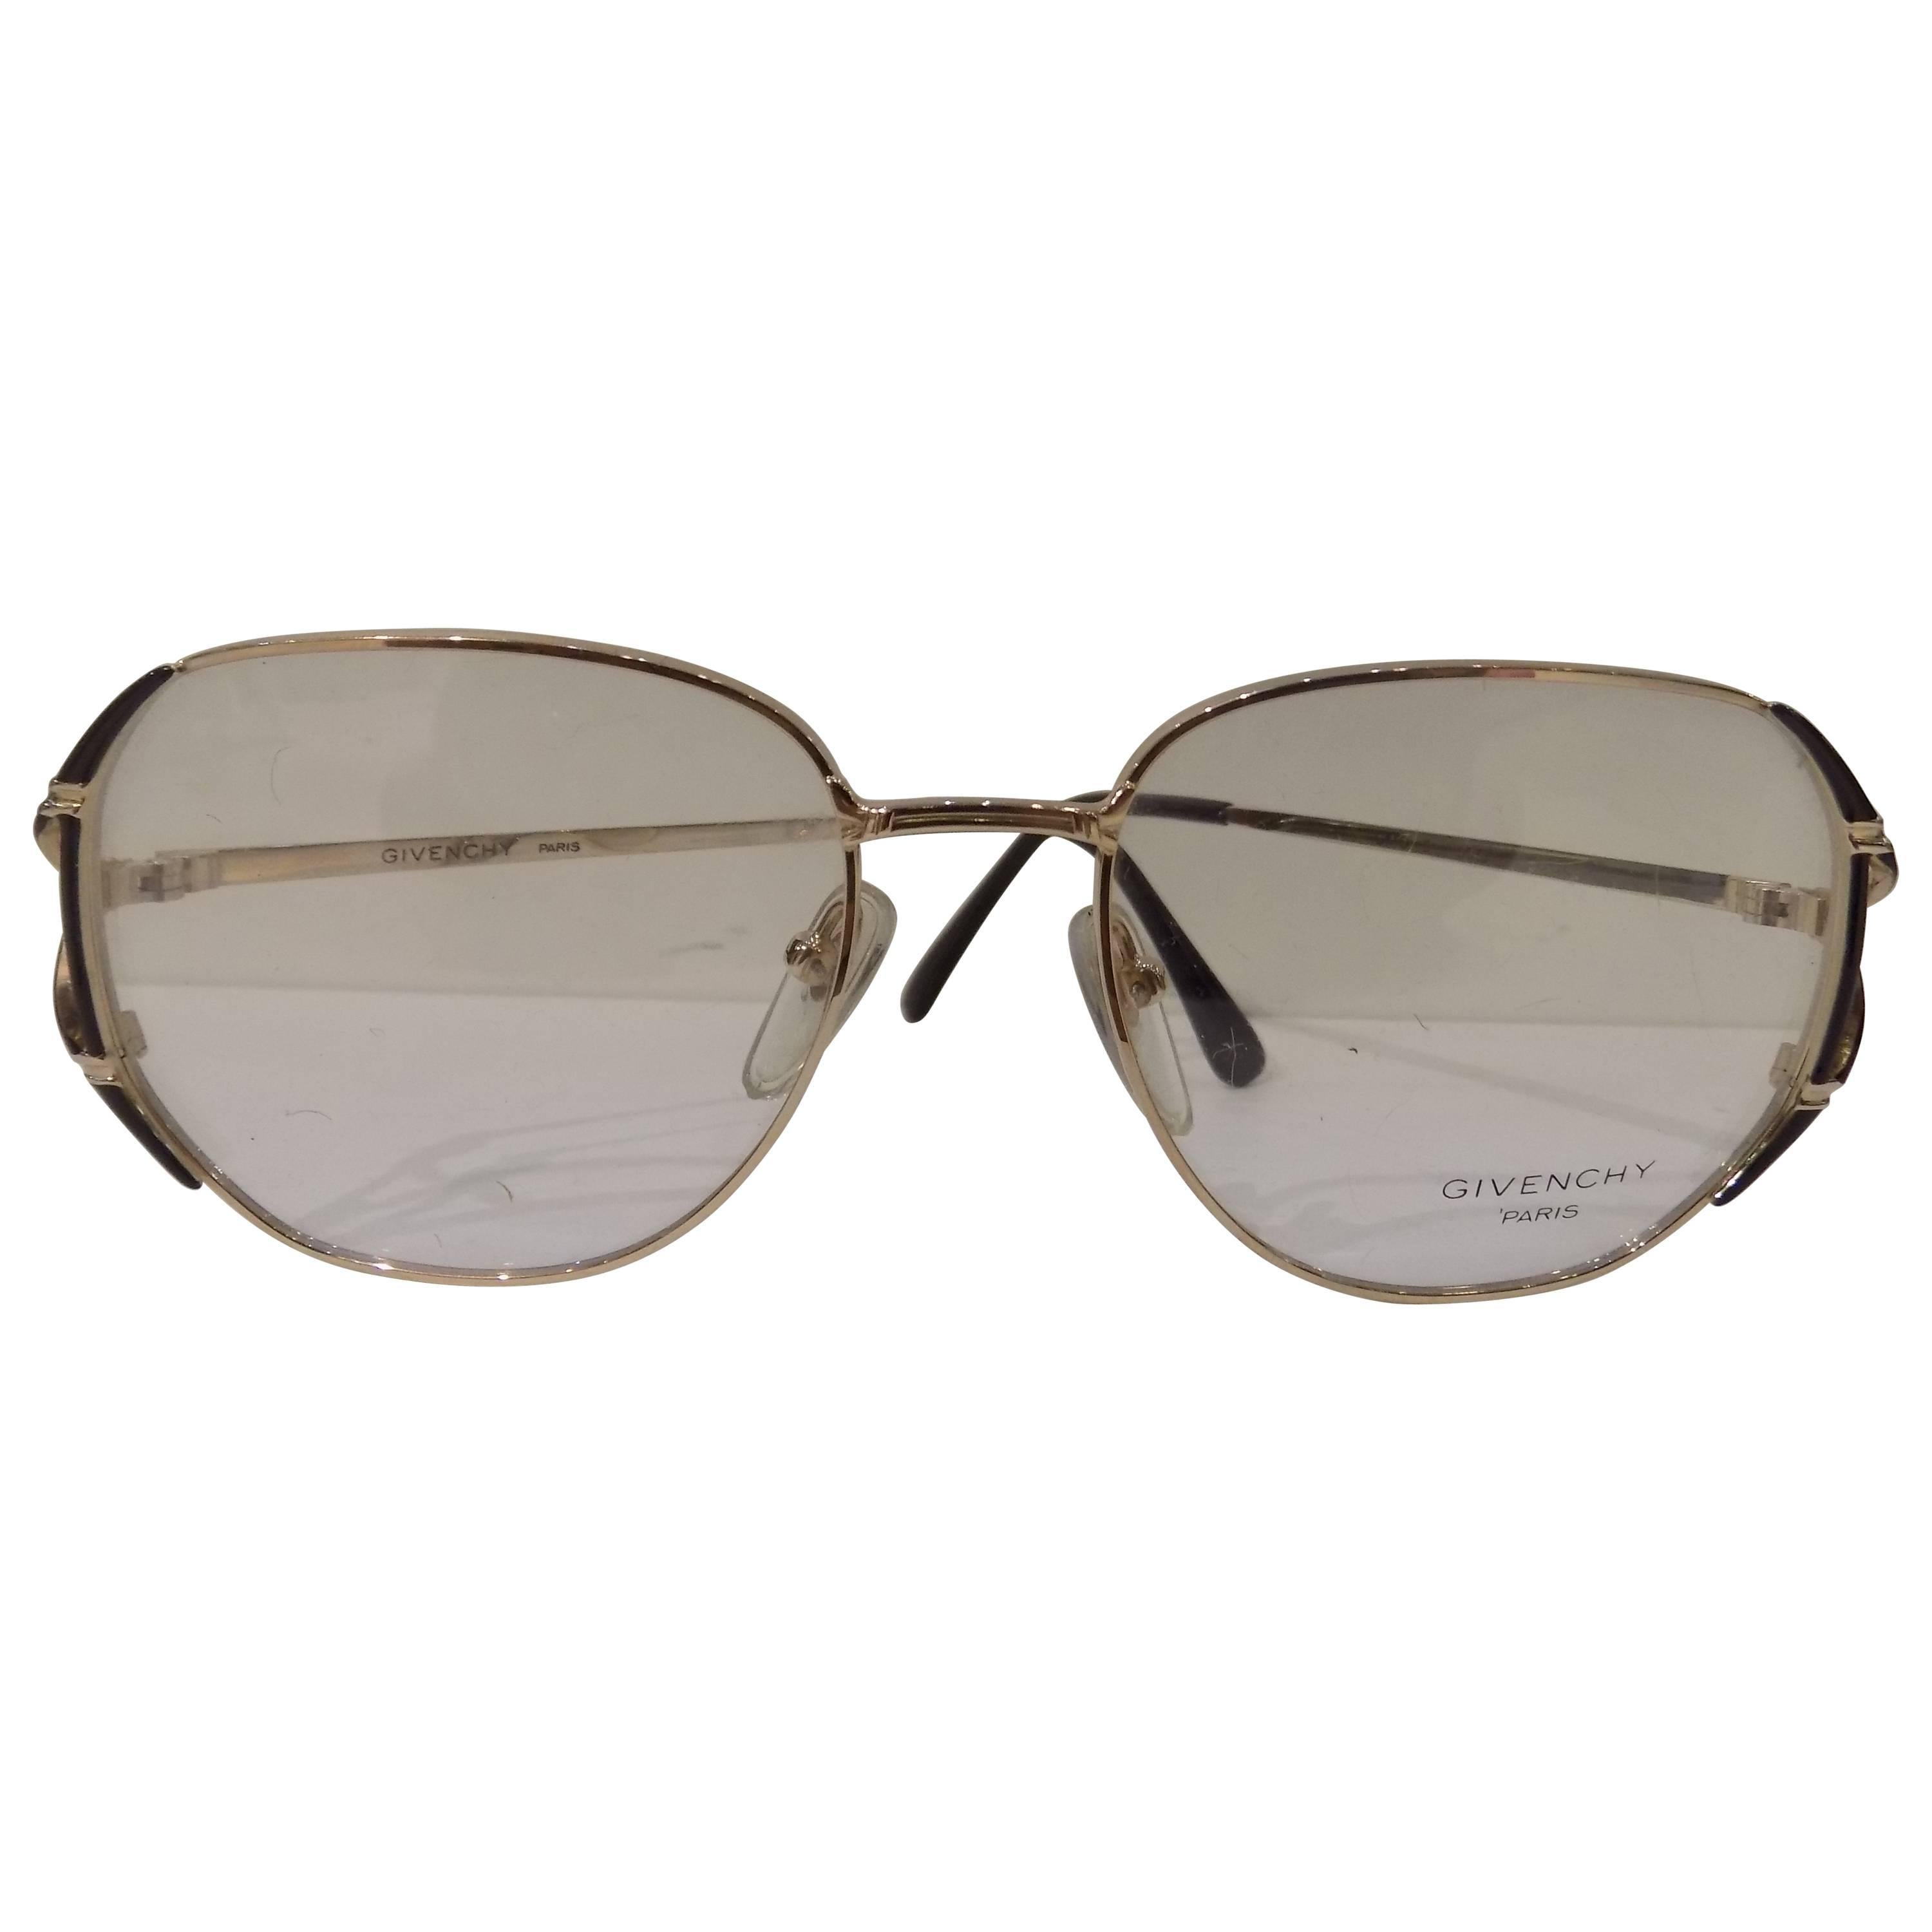 Givenchy unworn frame - glasses